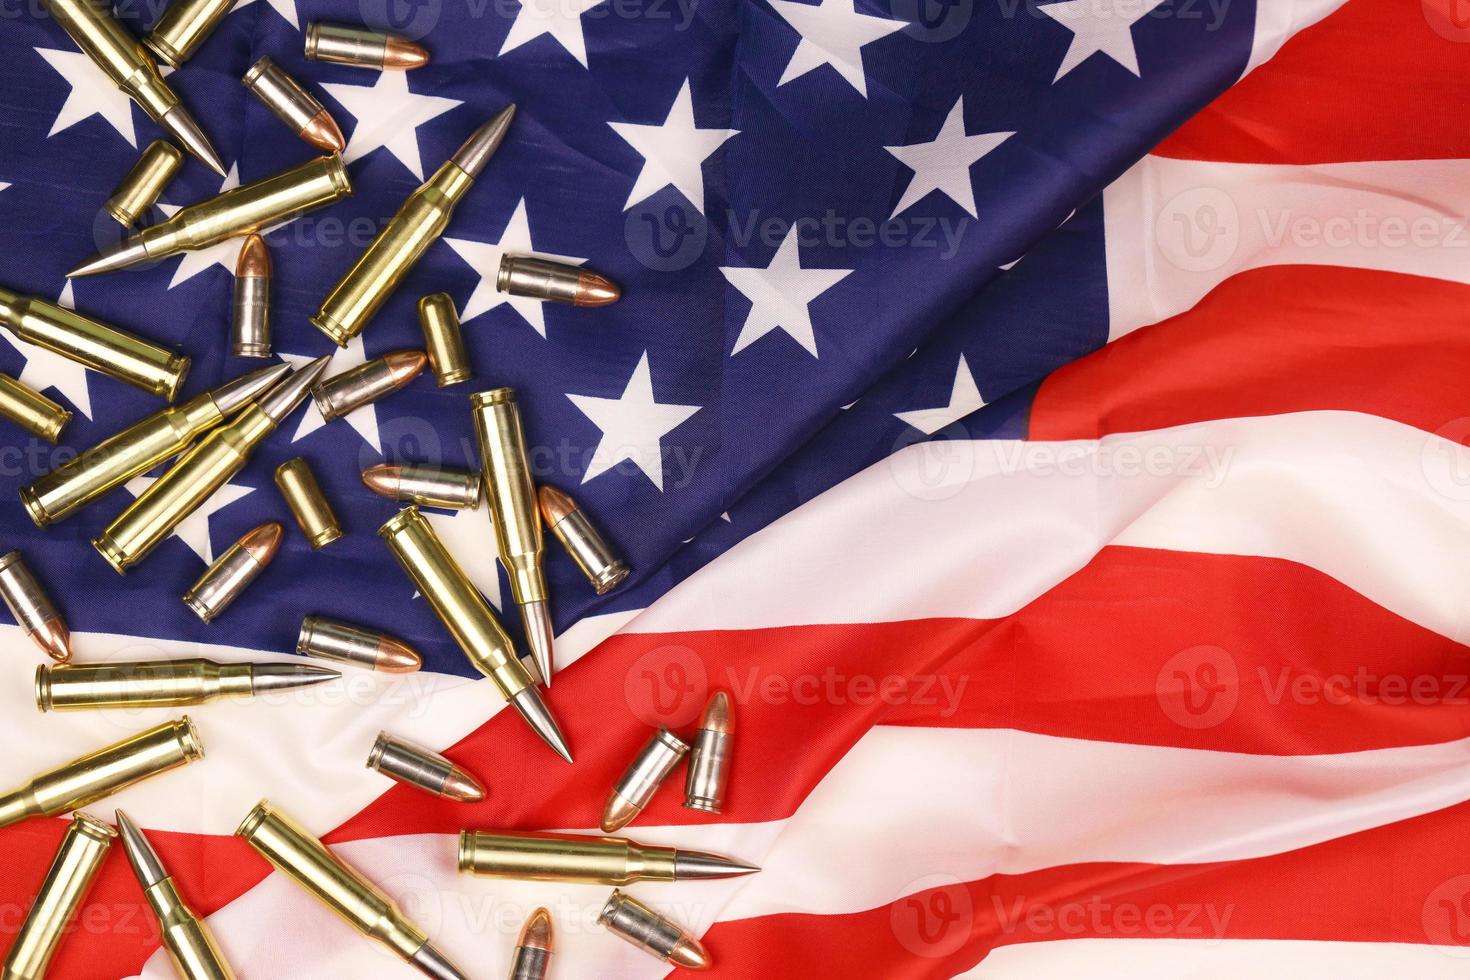 många gul 9mm och 5,56 mm kulor och patroner på förenad stater flagga. begrepp av pistol trafficking på USA territorium eller särskild ops foto